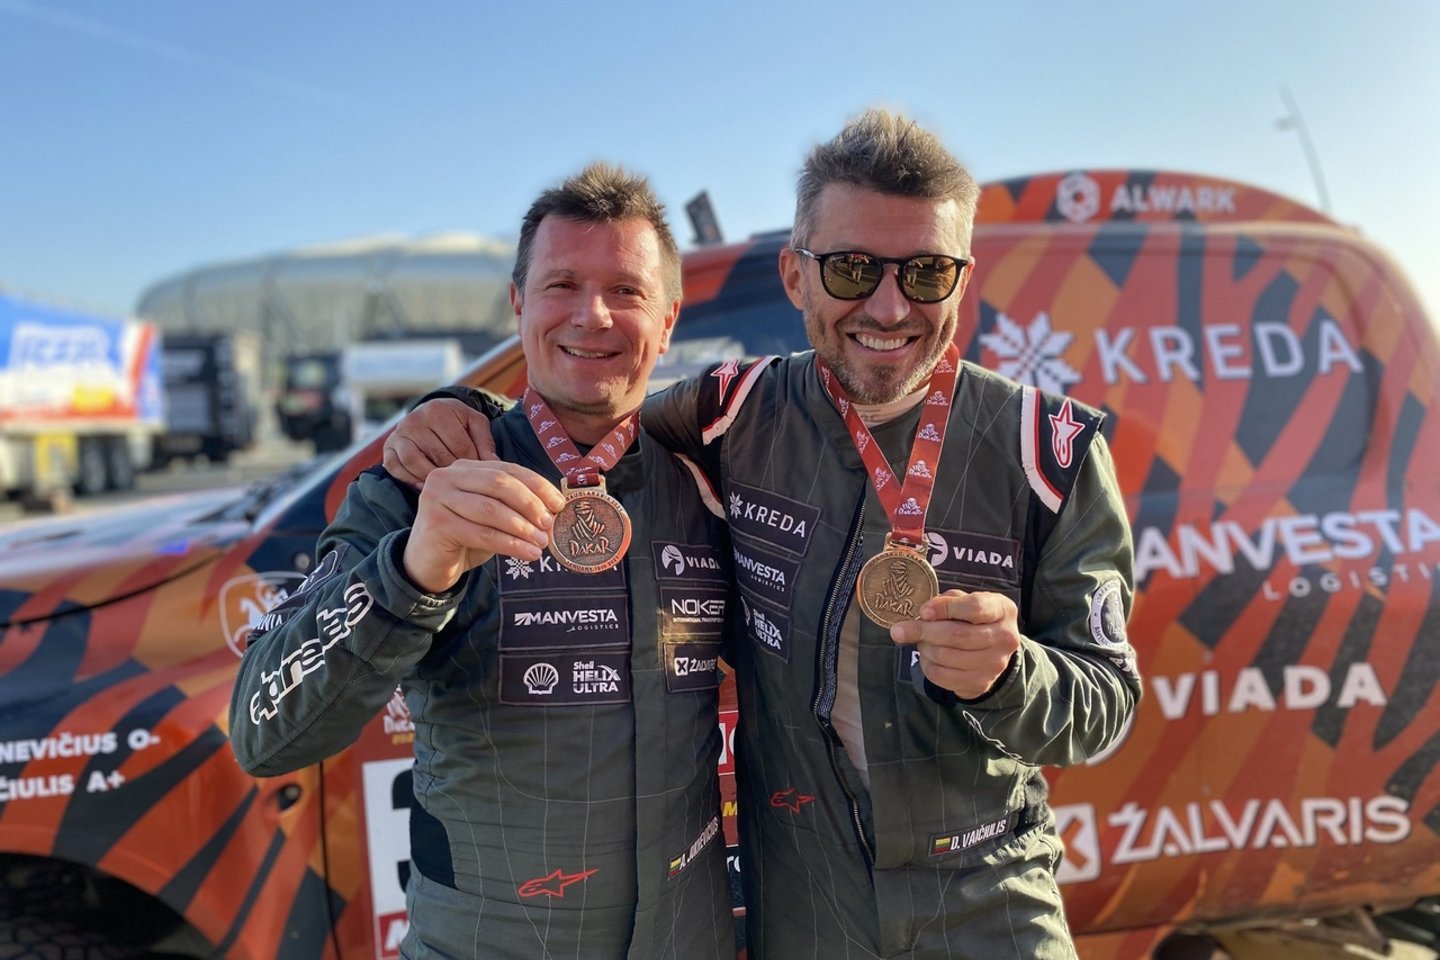  2021 metų Dakaro ralio „Kreda“ komanda: A.Juknevičius ir D.Vaičiulis. V.Dranginio nuotr.